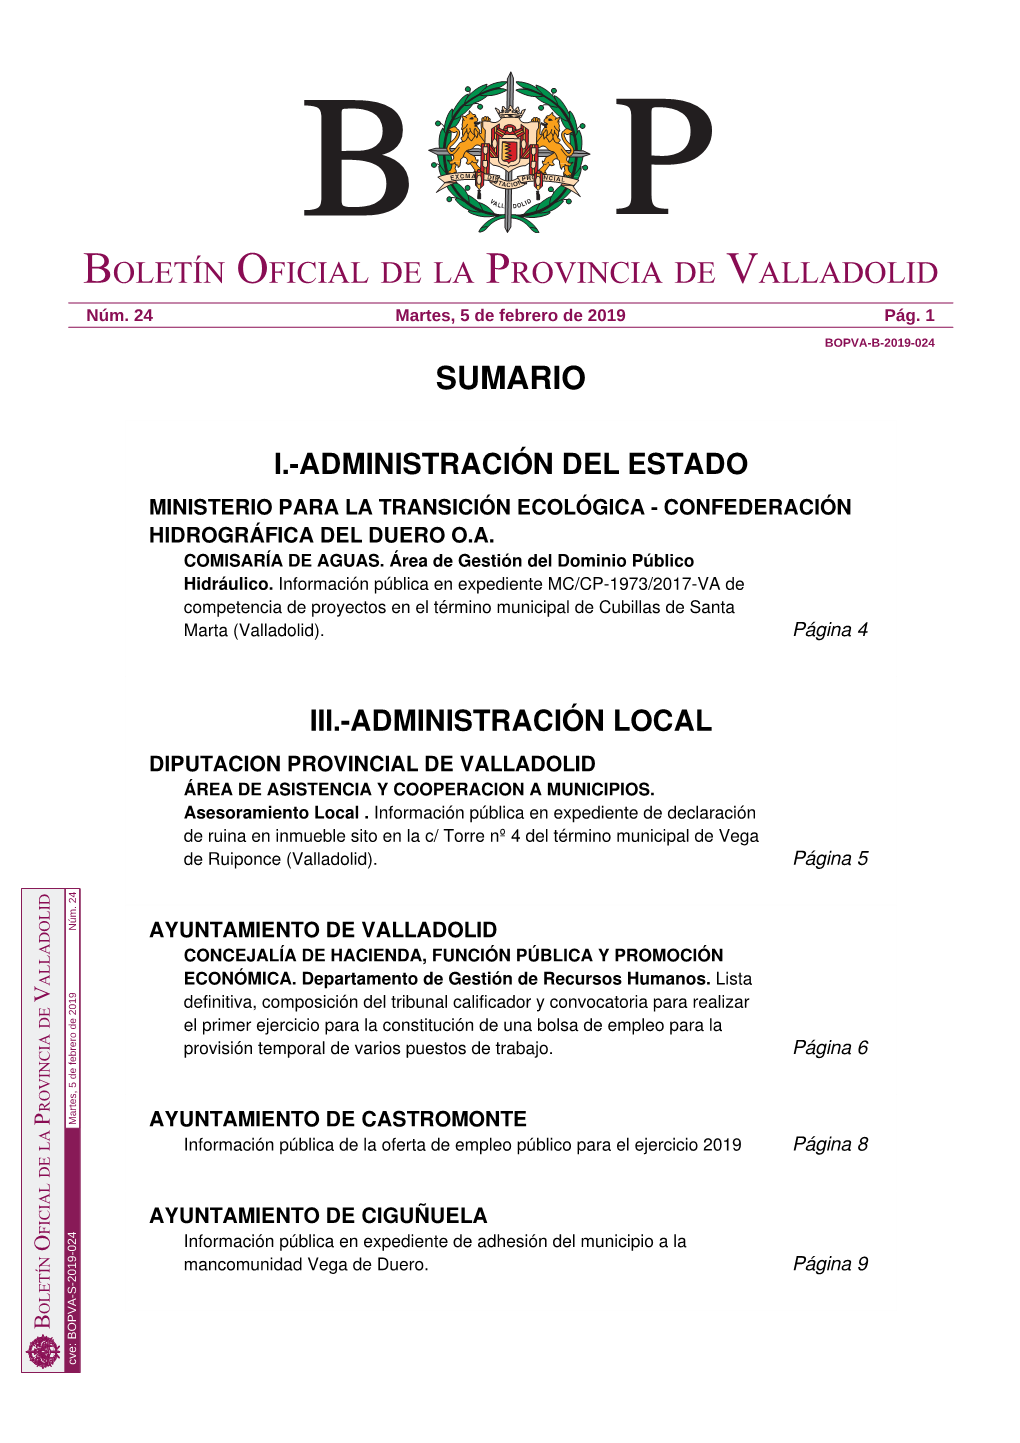 Administración Local Diputacion Provincial De Valladolid Área De Asistencia Y Cooperacion a Municipios